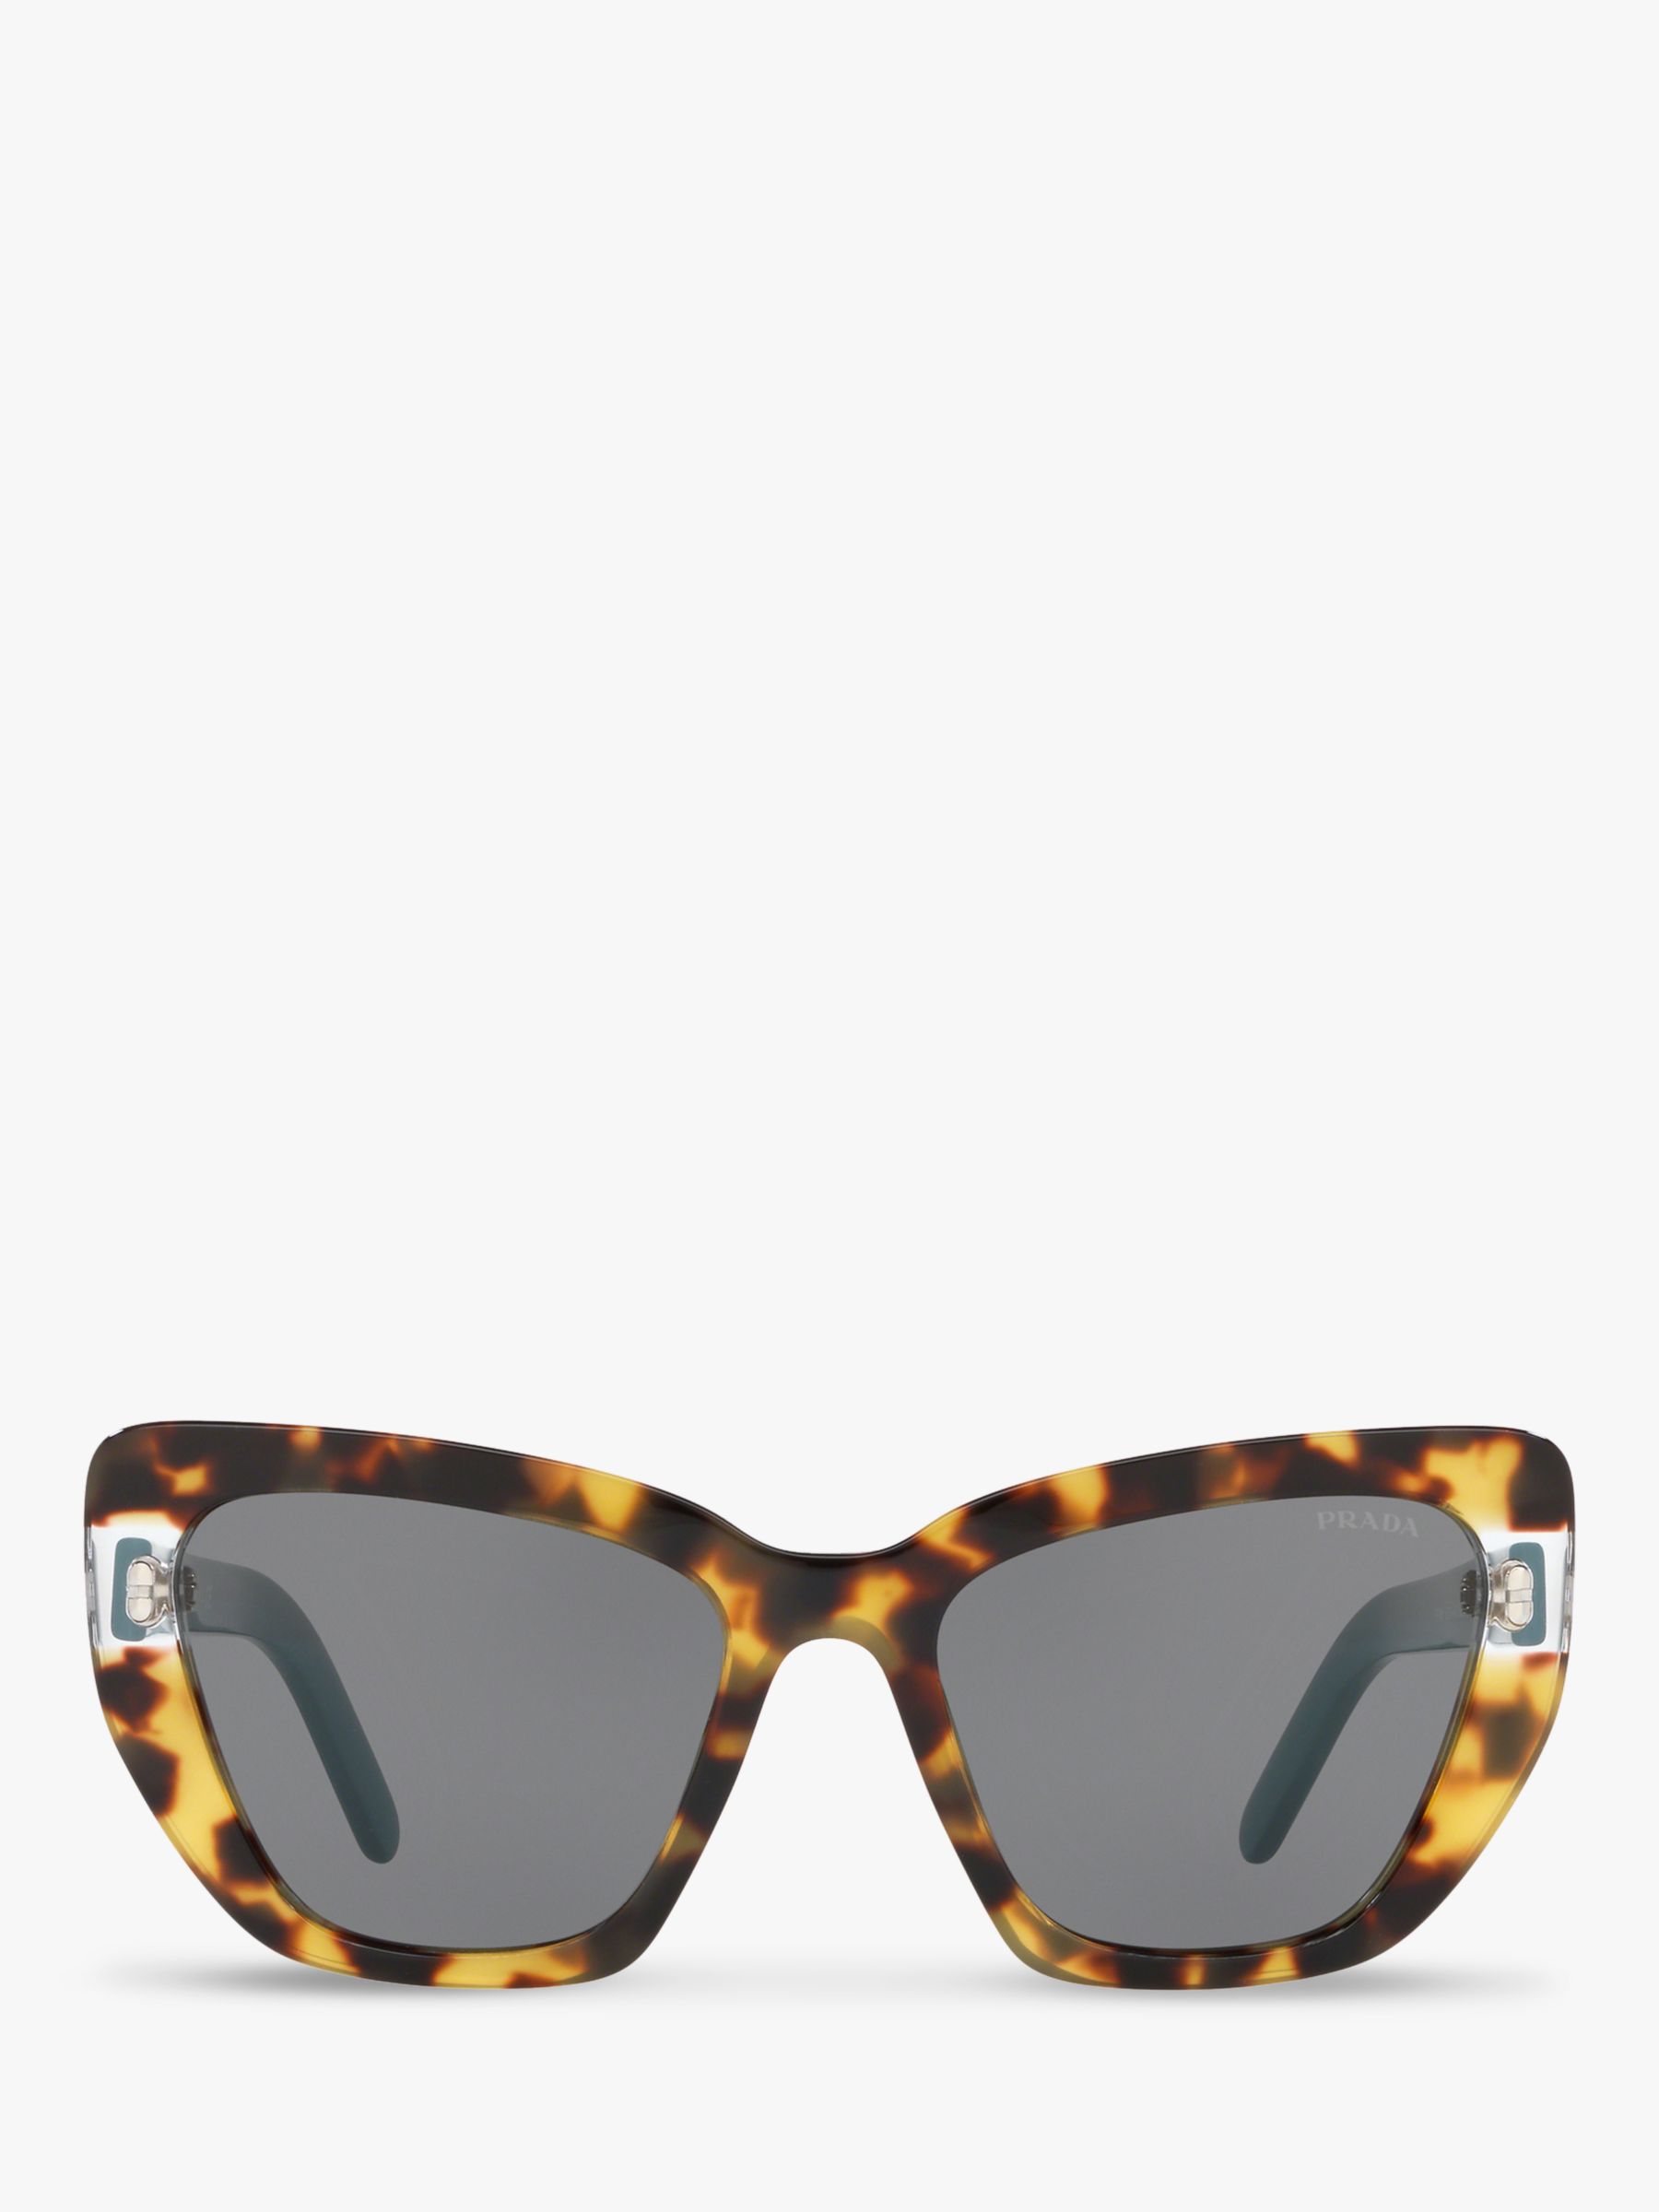 prada women's cat eye sunglasses